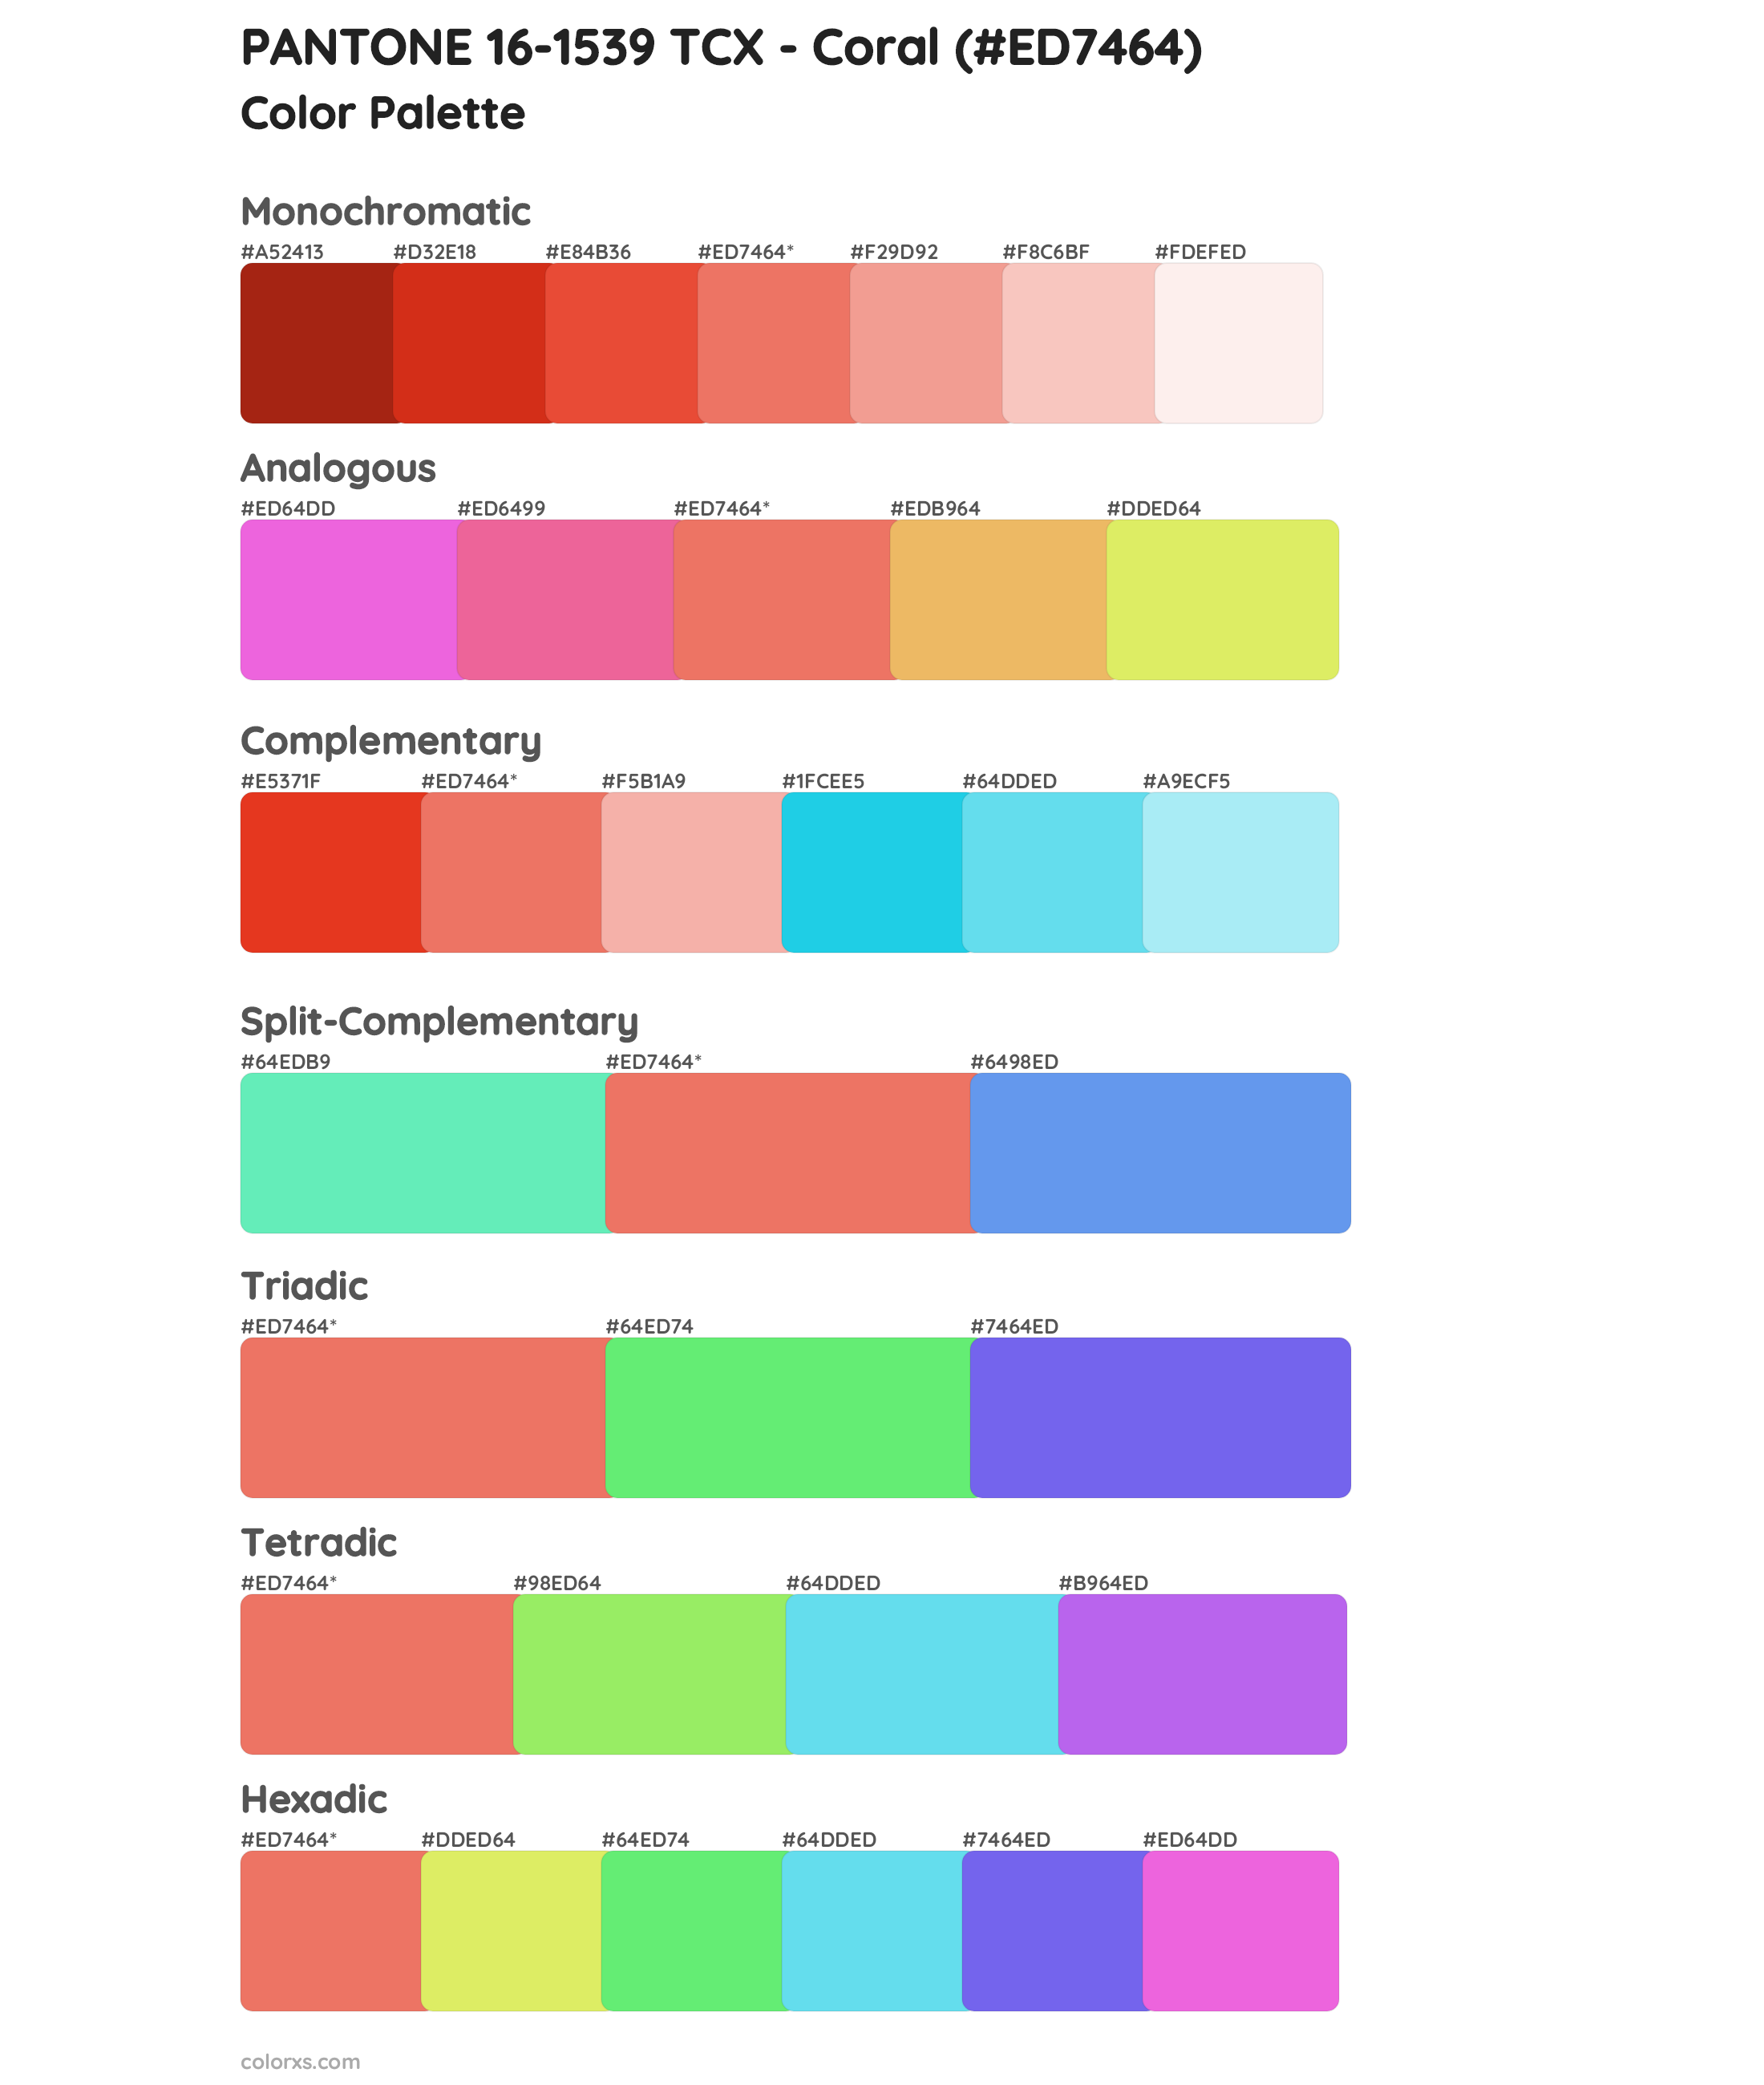 PANTONE 16-1539 TCX - Coral Color Scheme Palettes